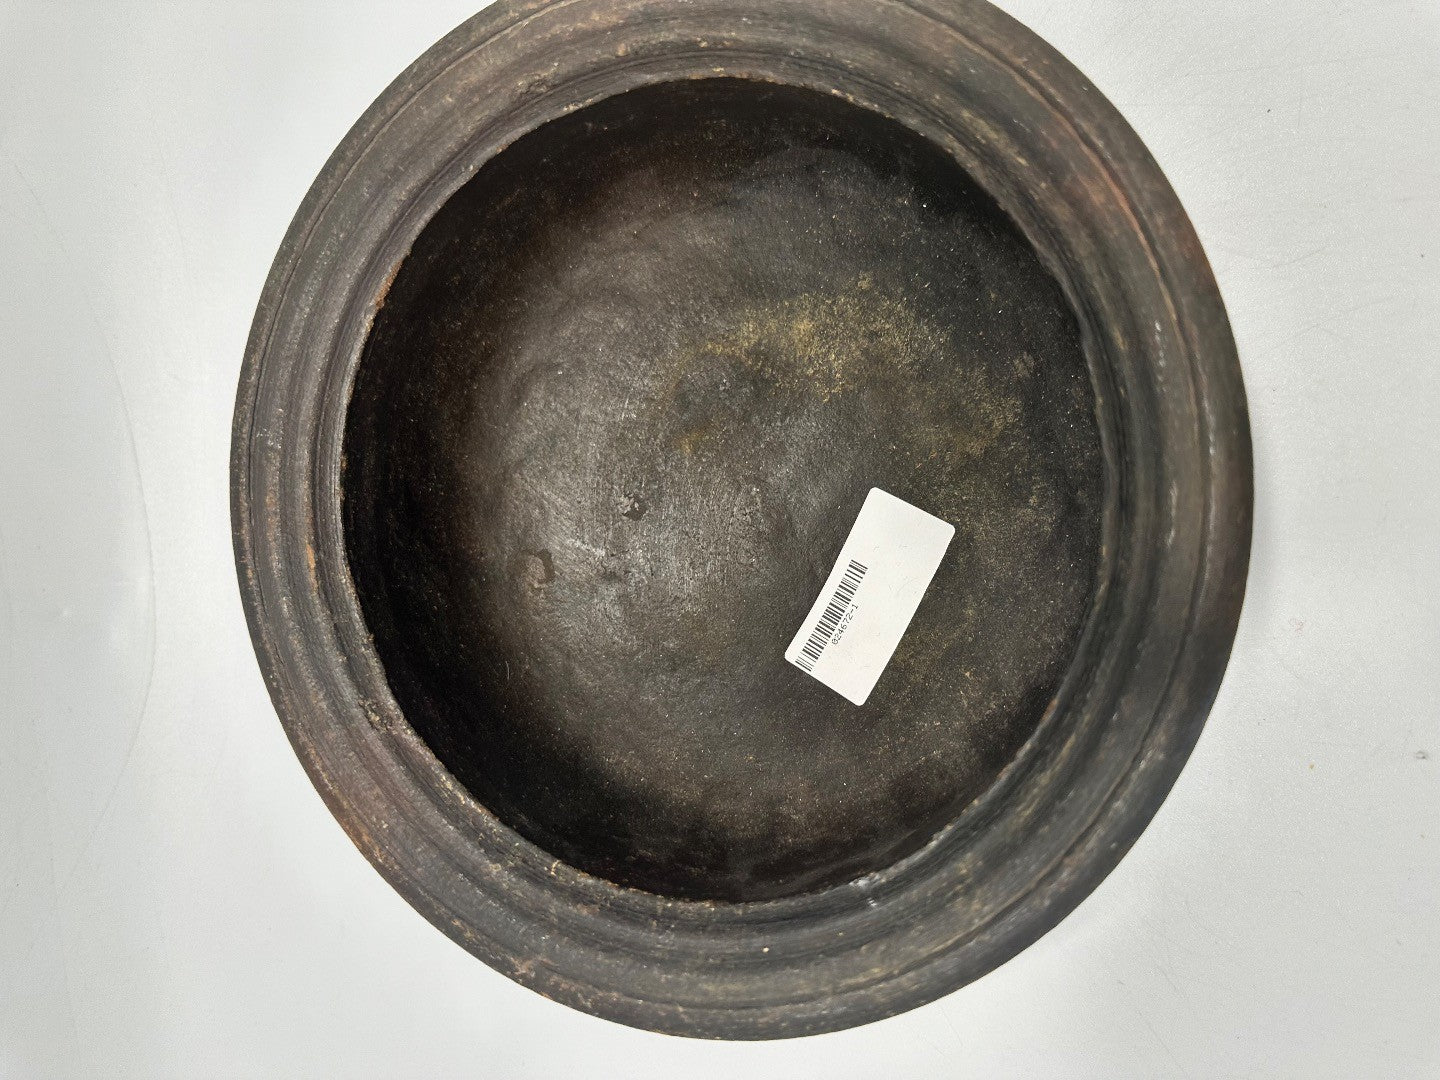 Antique Redware Rimmed Bowl